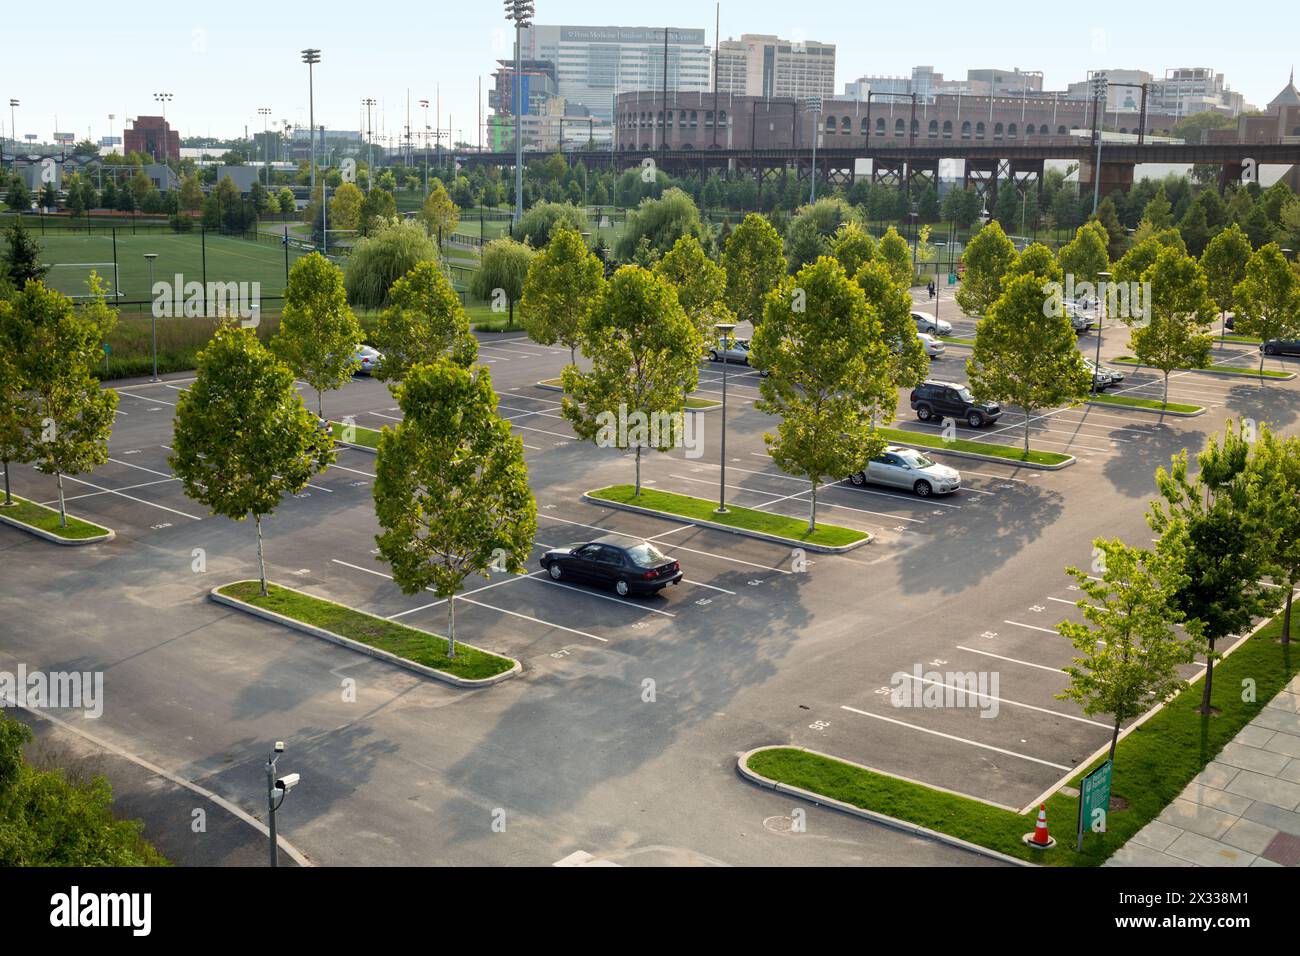 USA, PHILADELPHIA - 03 settembre 2014: Cityscape con PENN Medicine Smilow Research e parcheggio auto con pochi veicoli in autunno. Foto Stock